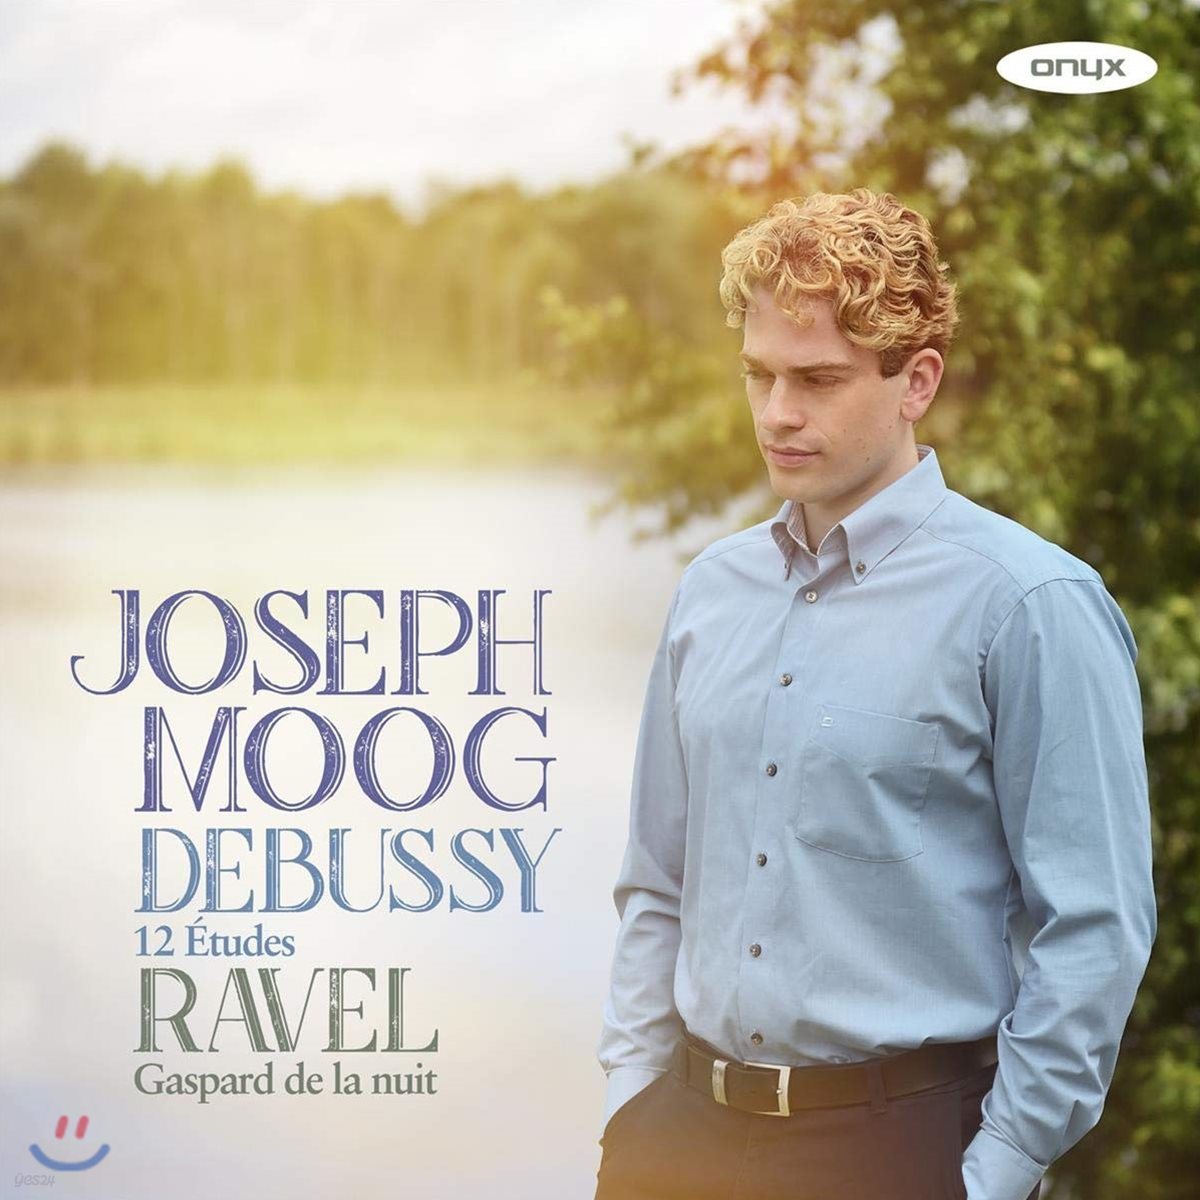 Joseph Moog 드뷔시: 에튀드 1, 2권 / 라벨: 밤의 가스파르 (Plays Debussy & Ravel)